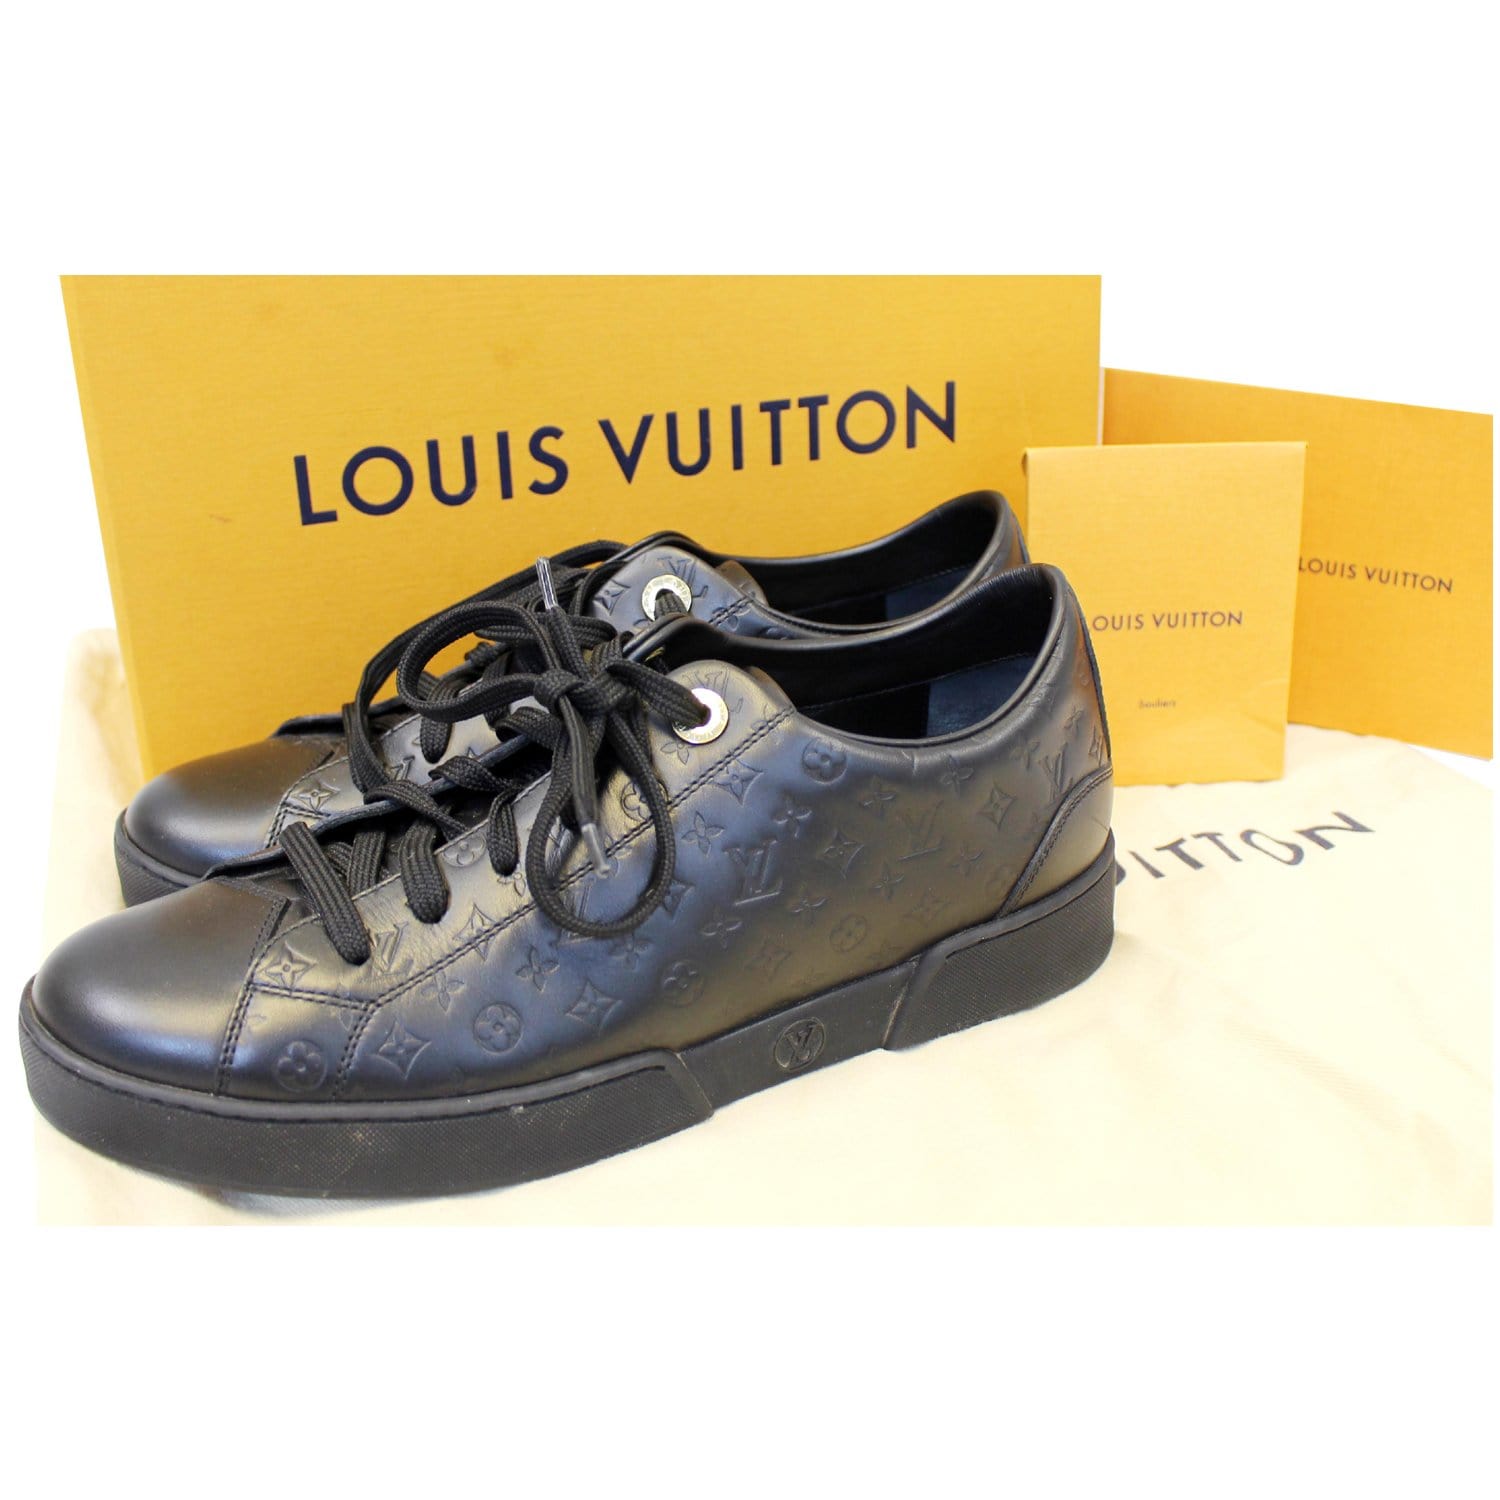 Túi xách Louis Vuitton ONTHEGO siêu cấp 2 mặt trắng đen size 41cm